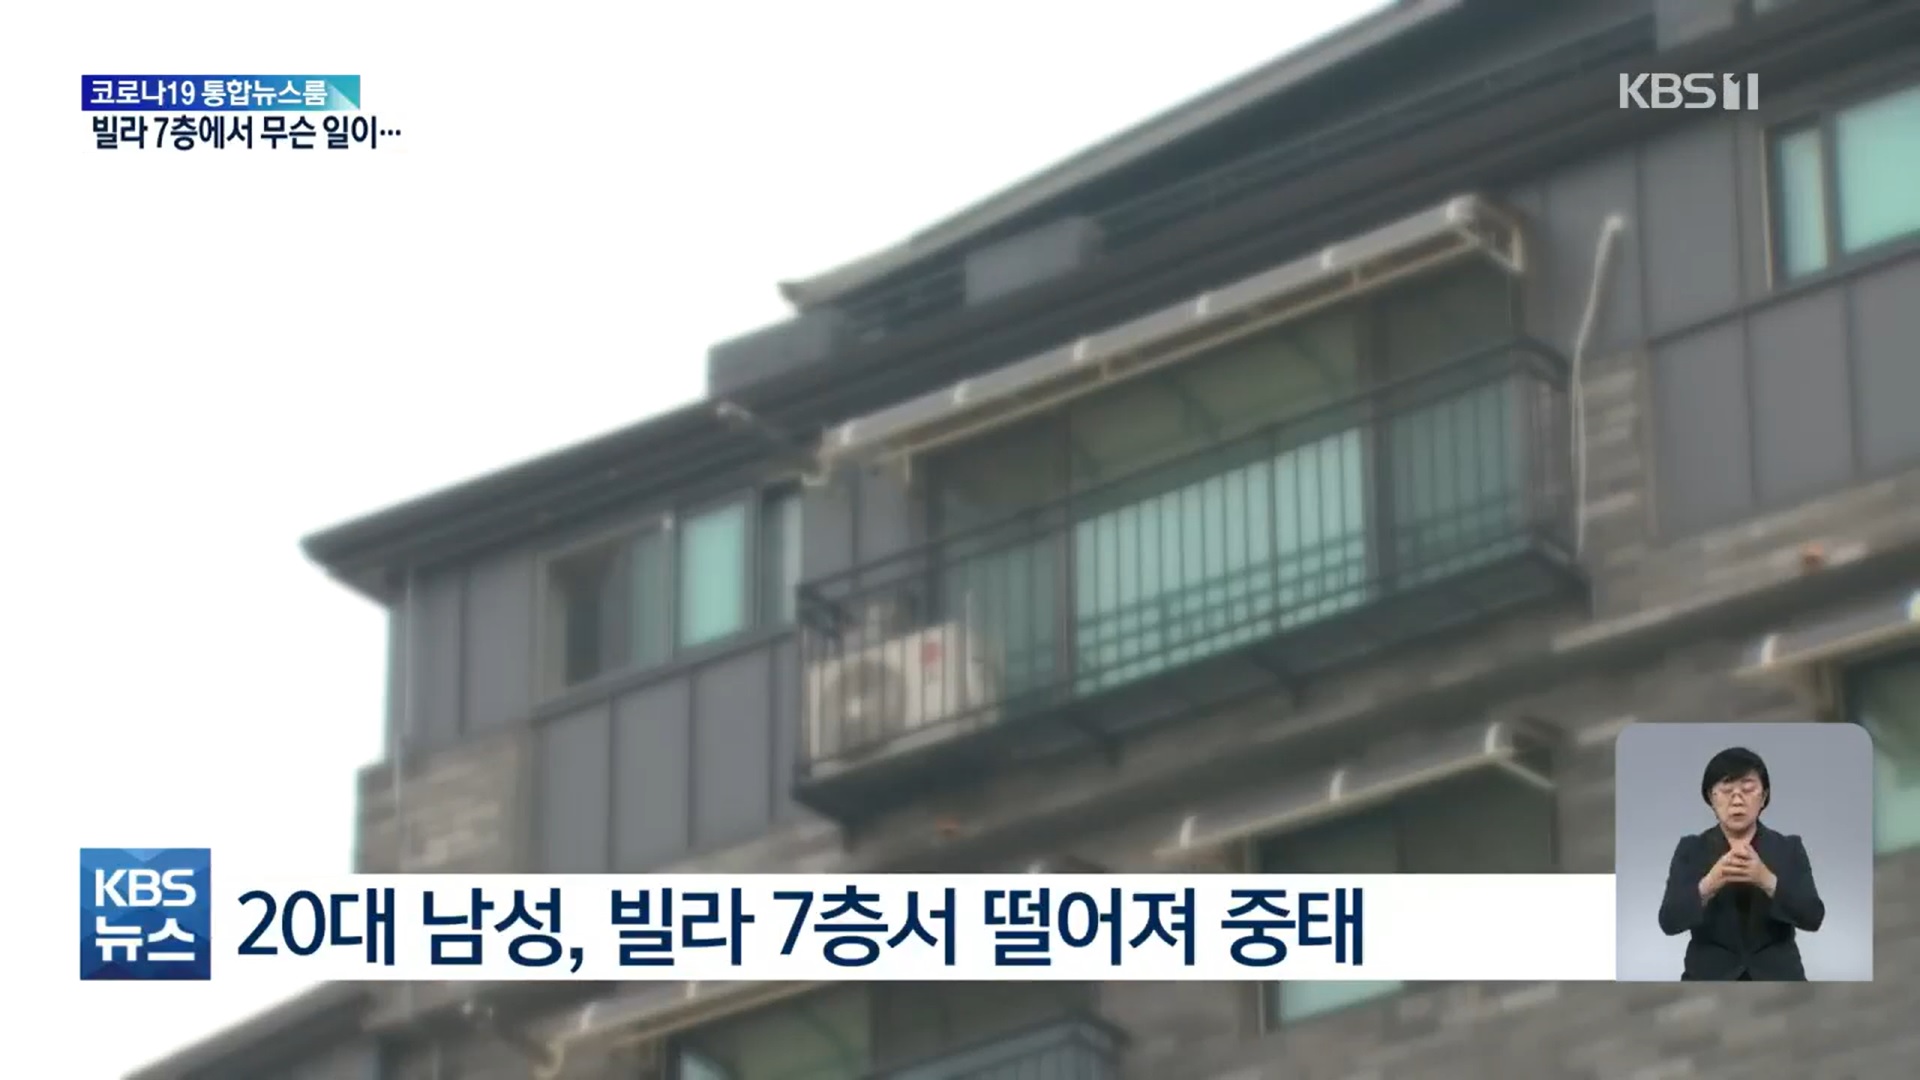 20대 남성이 부동산 분양 합숙소를 탈출하려다 건물에서 추락해 중태에 빠졌다. KBS 보도 캡처